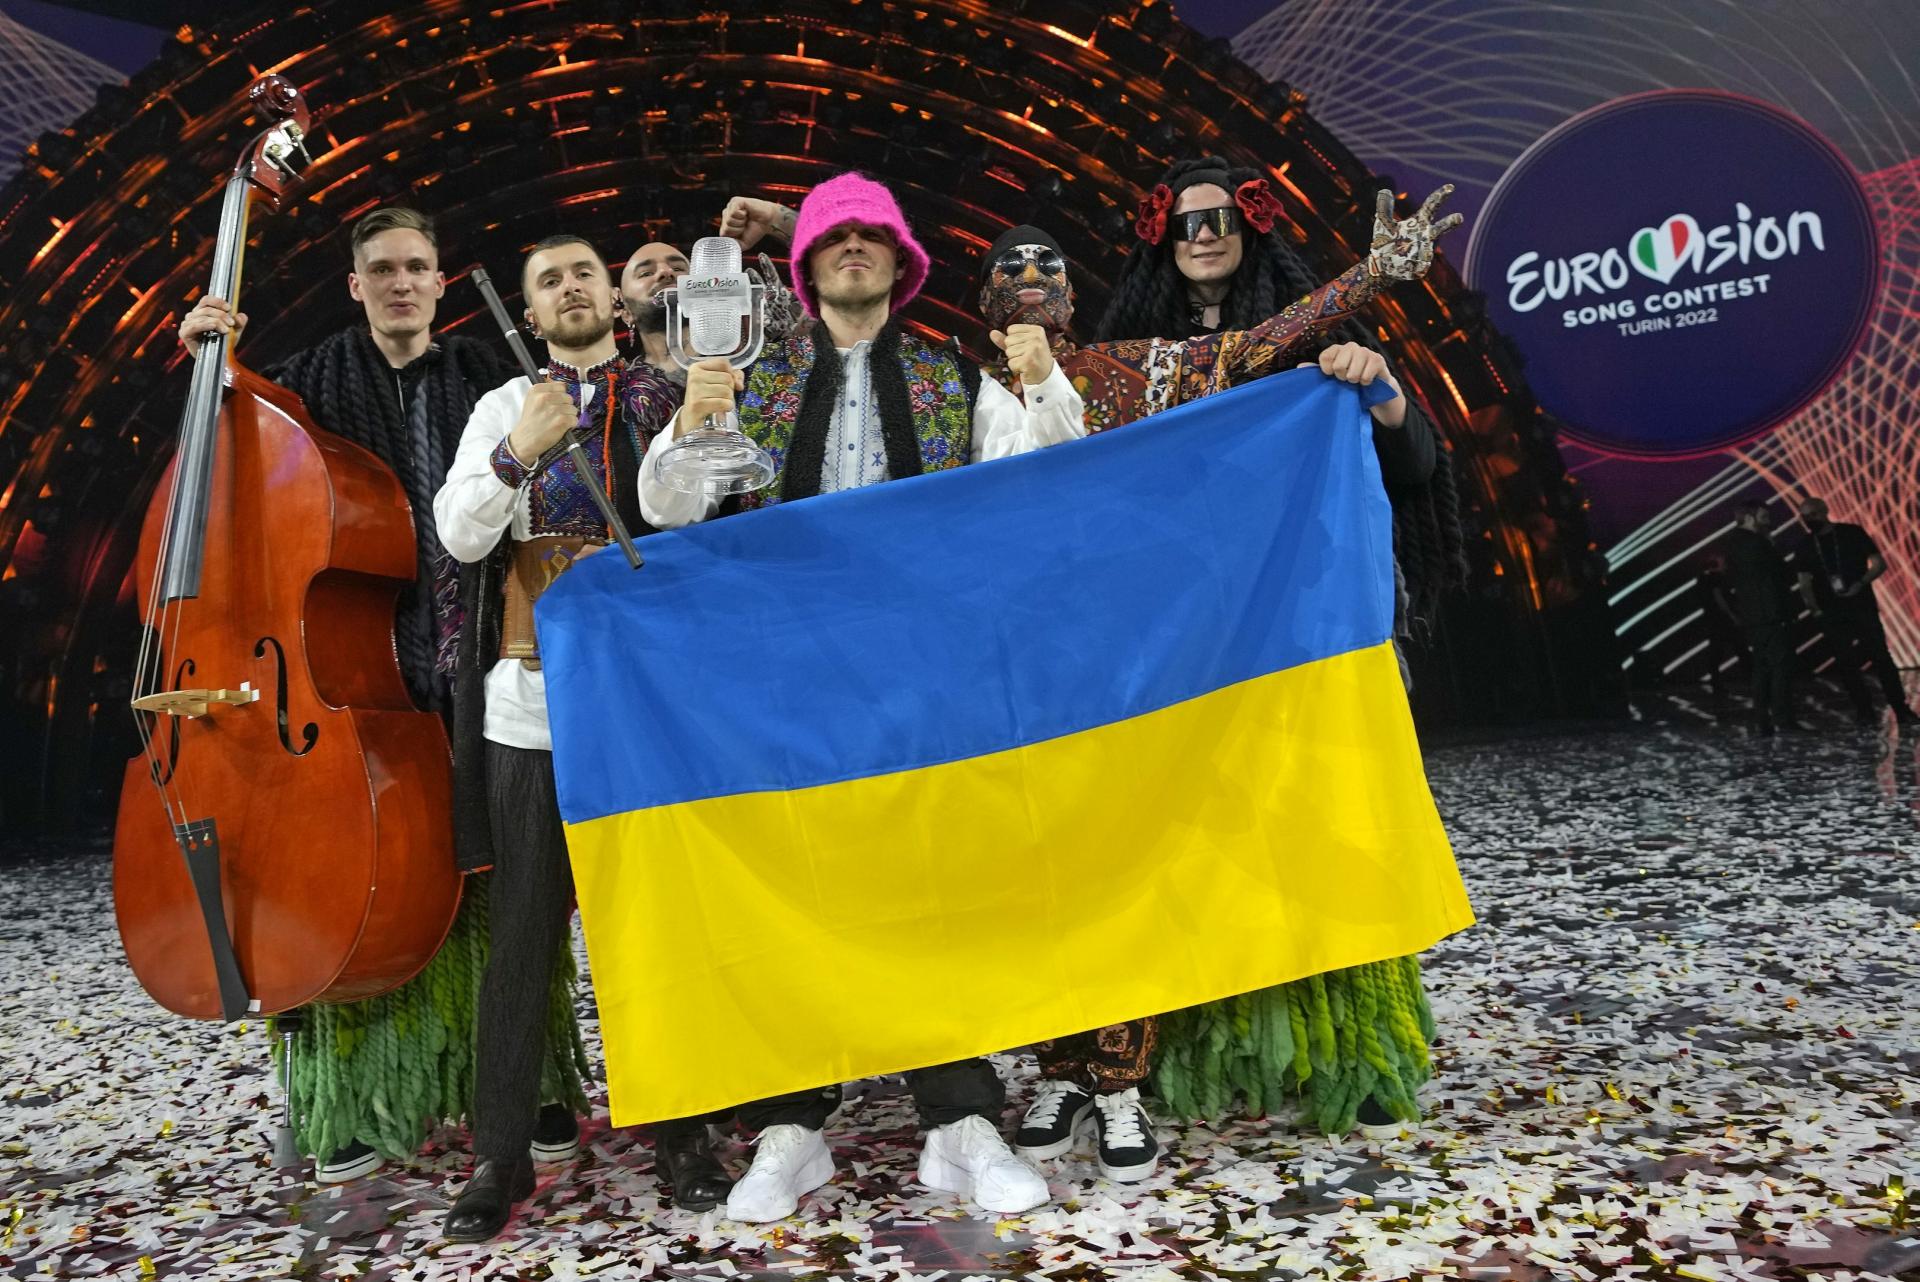 Británia ponúkne vysídleným Ukrajincom 3000 vstupeniek na Eurovíziu, preberie v mene Kyjeva organizáciu